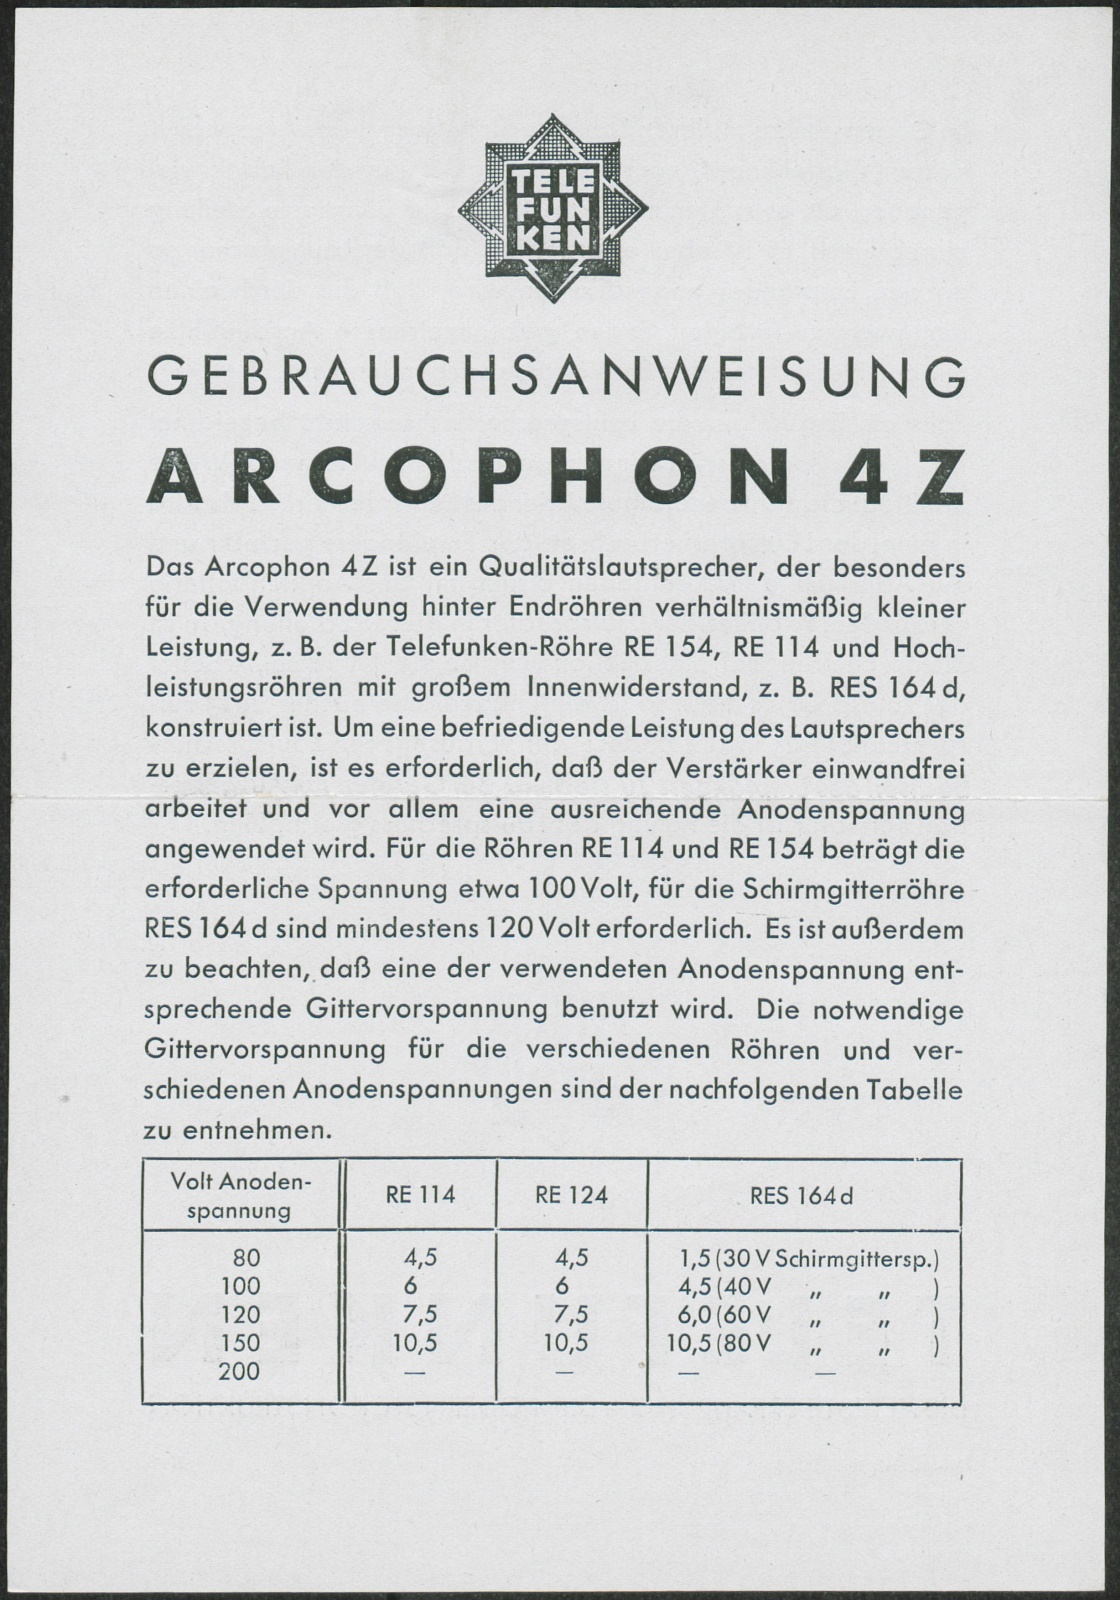 Bedienungsanleitung: Gebrauchsanweisung Arcophon 4Z (Stiftung Deutsches Technikmuseum Berlin CC0)